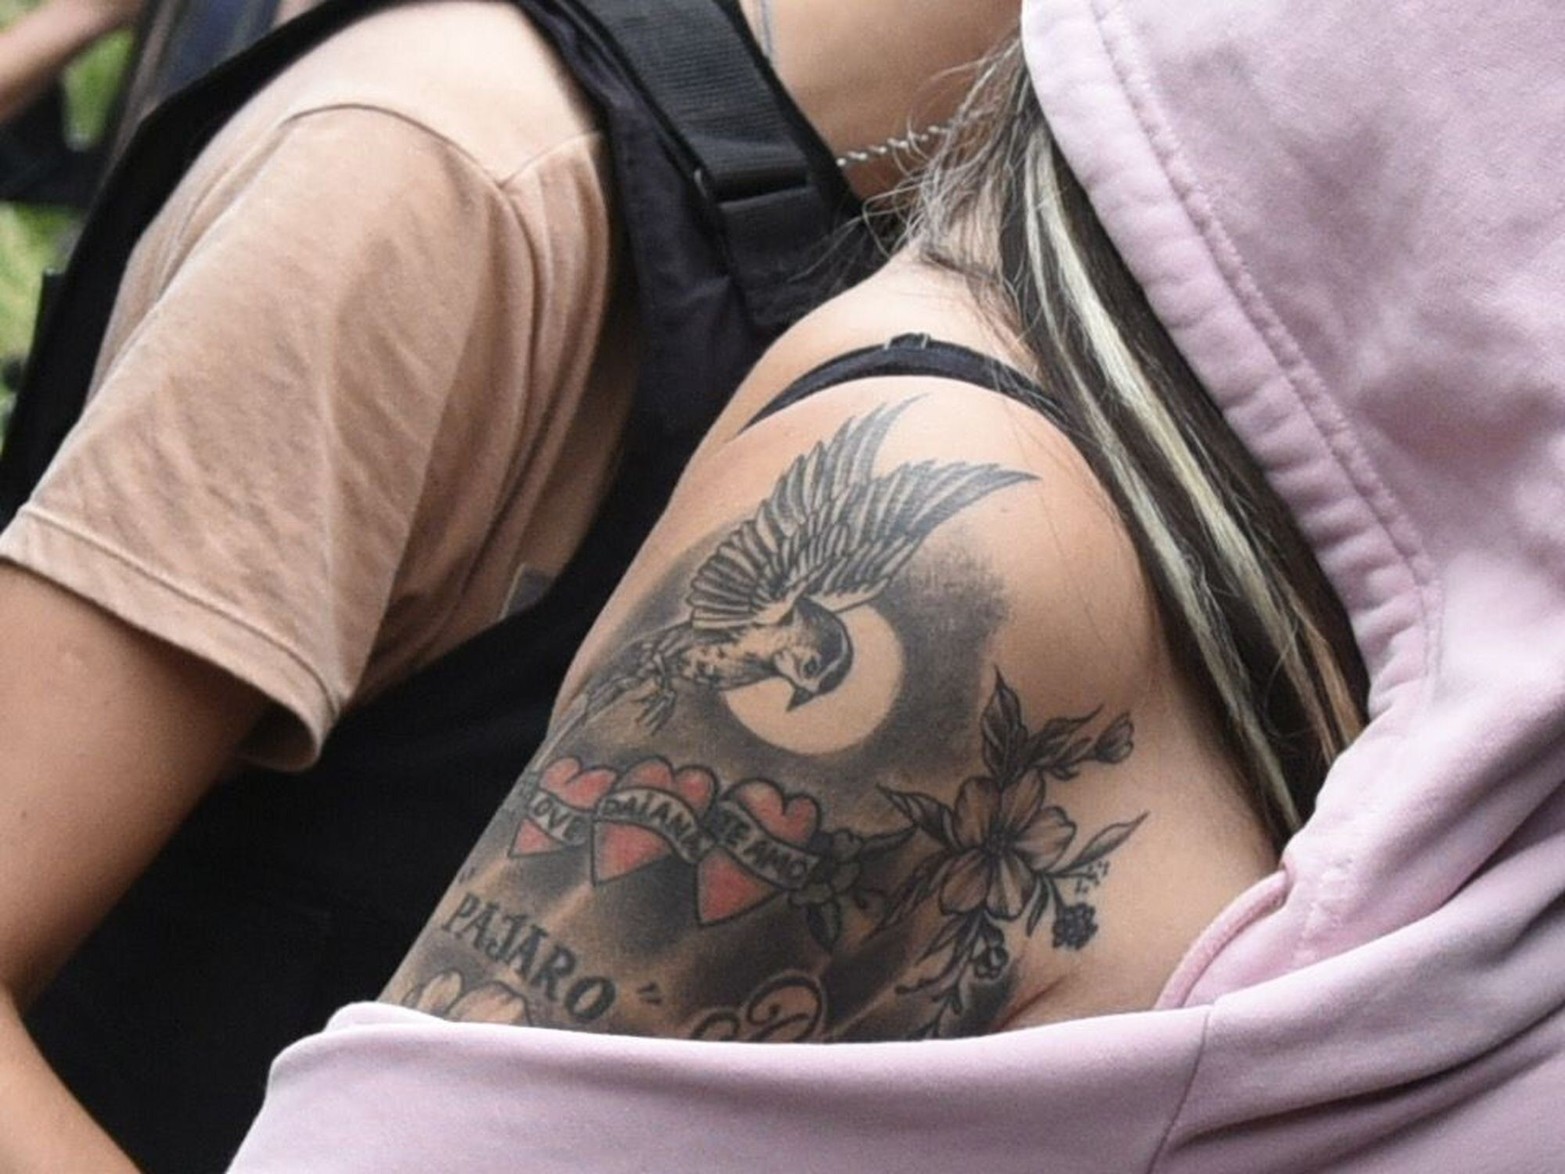 Una mujer detenida, con el tatuaje de la banda de los Monos.